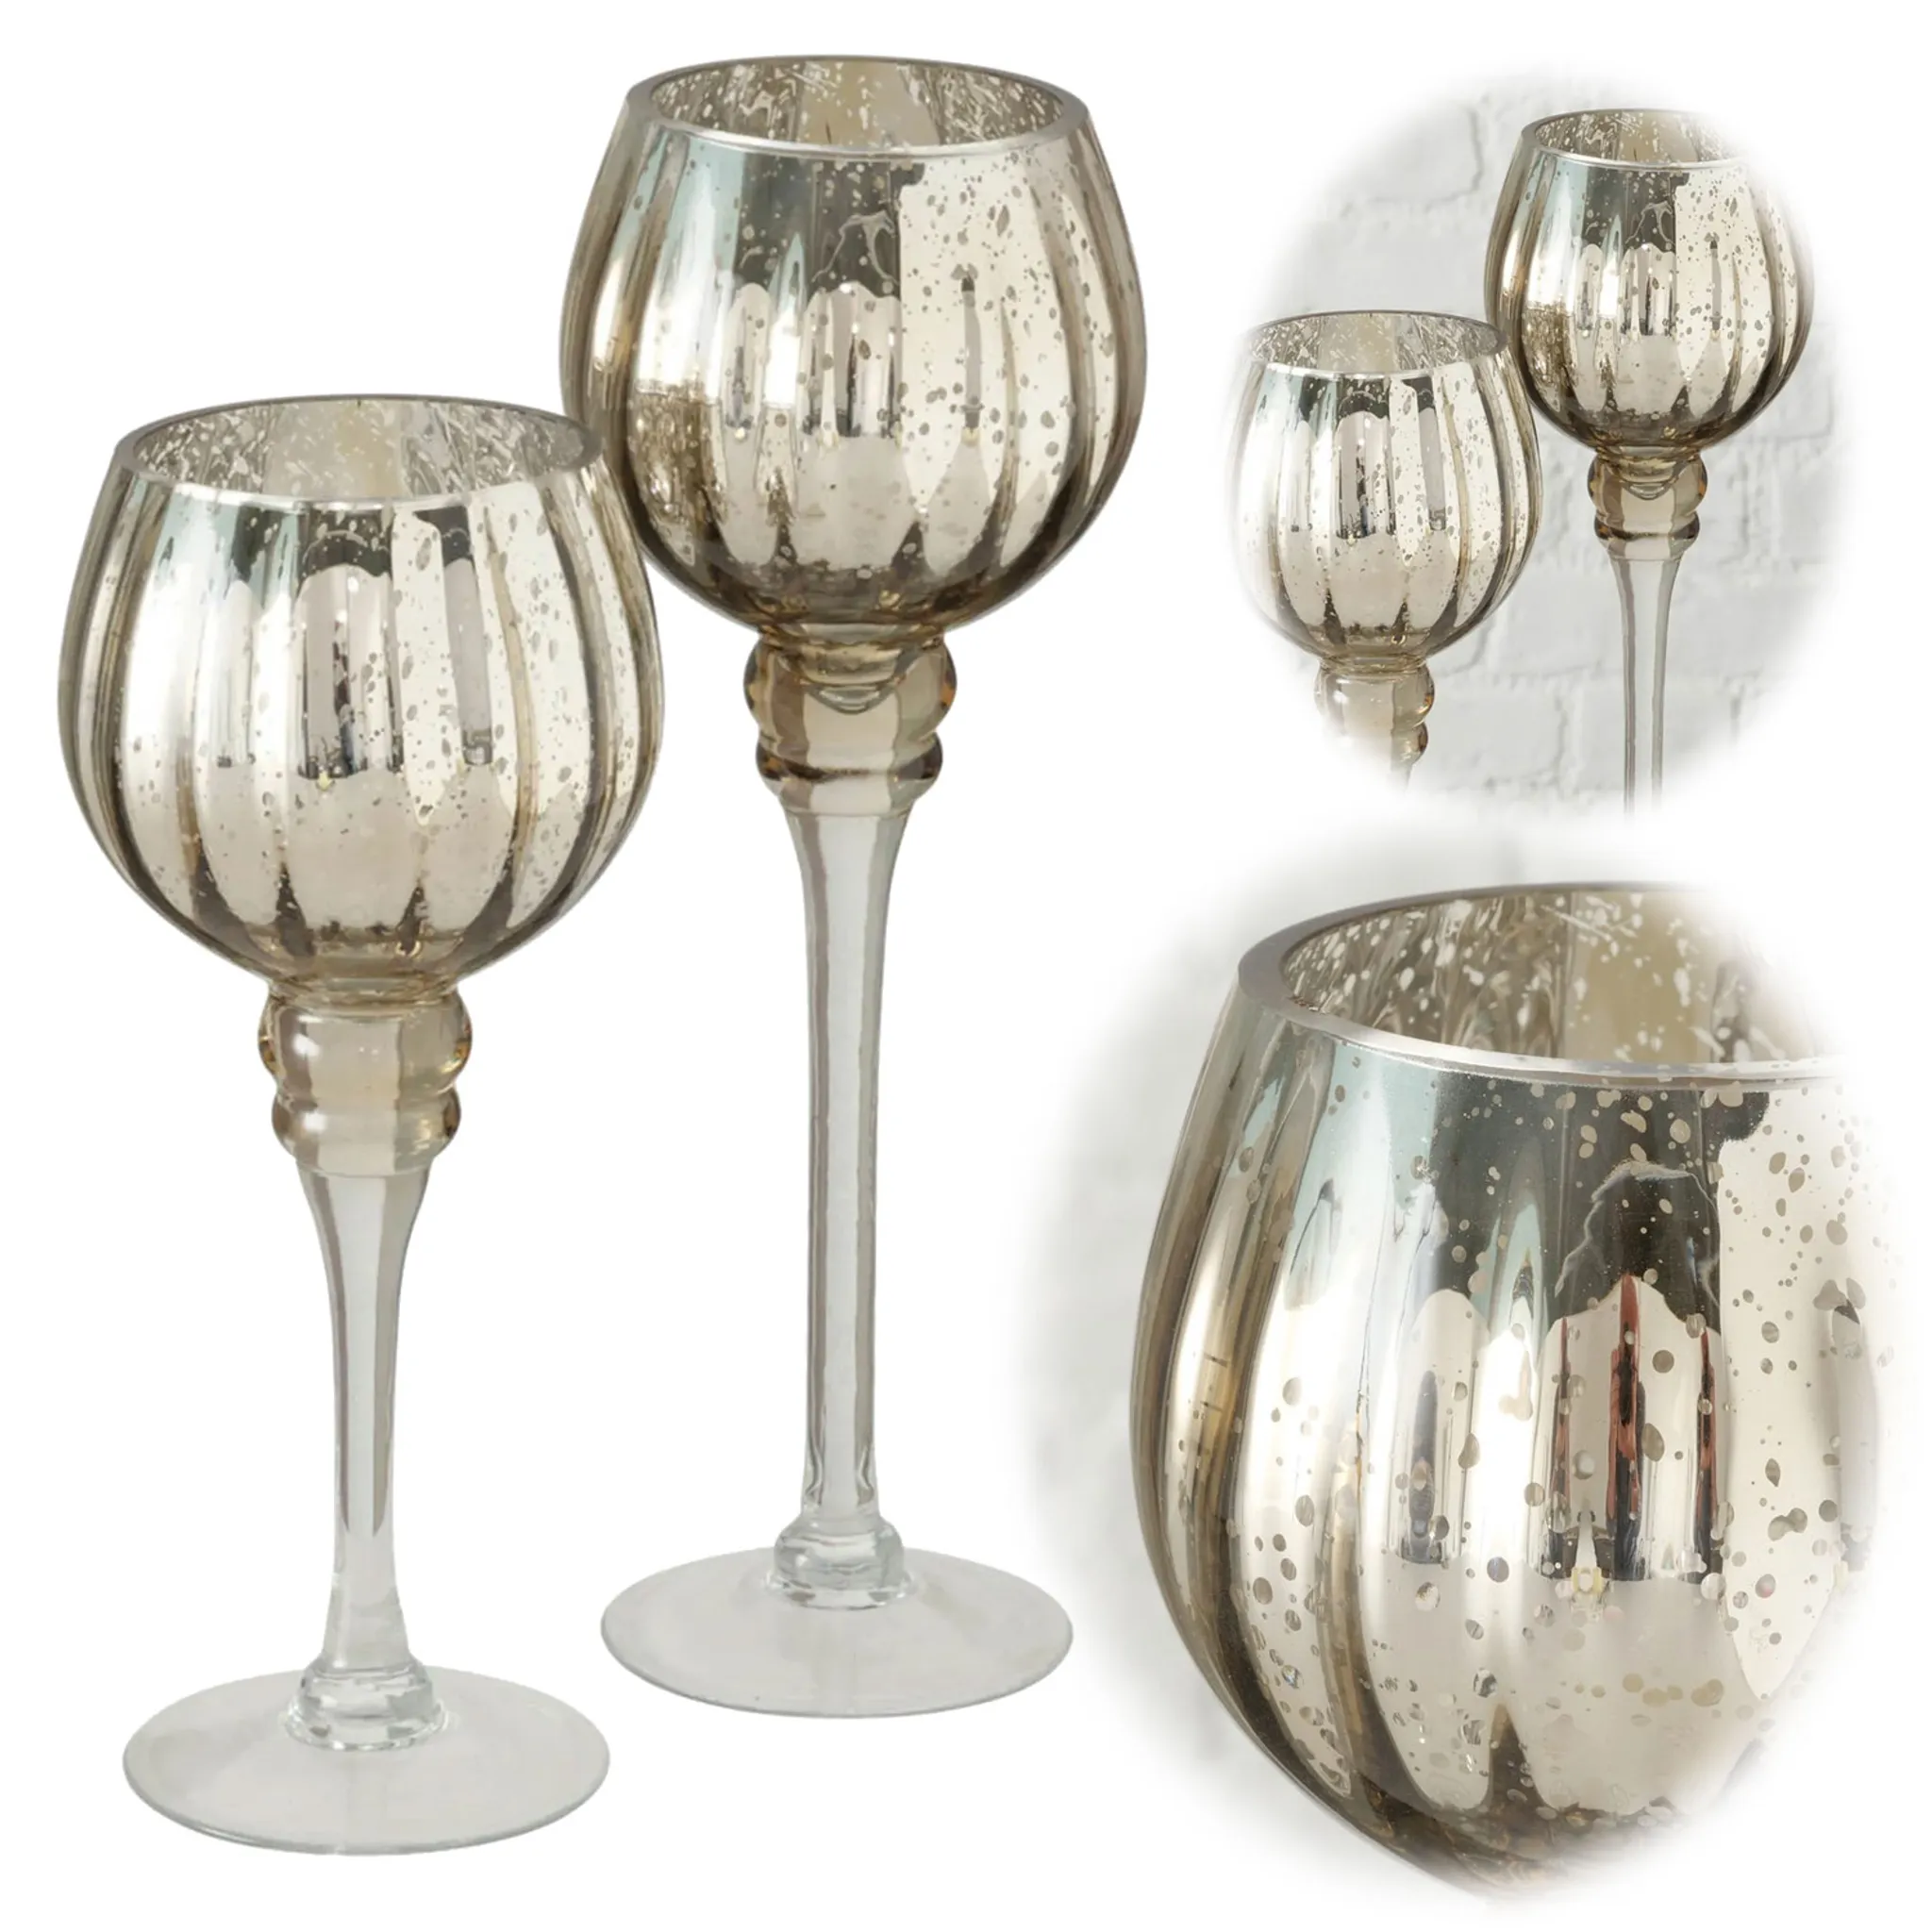 LS-LebenStil Exklusives XL 2-fach Glas Champagner Windlicht Kerzenständer 25/30cm Teelichthalter